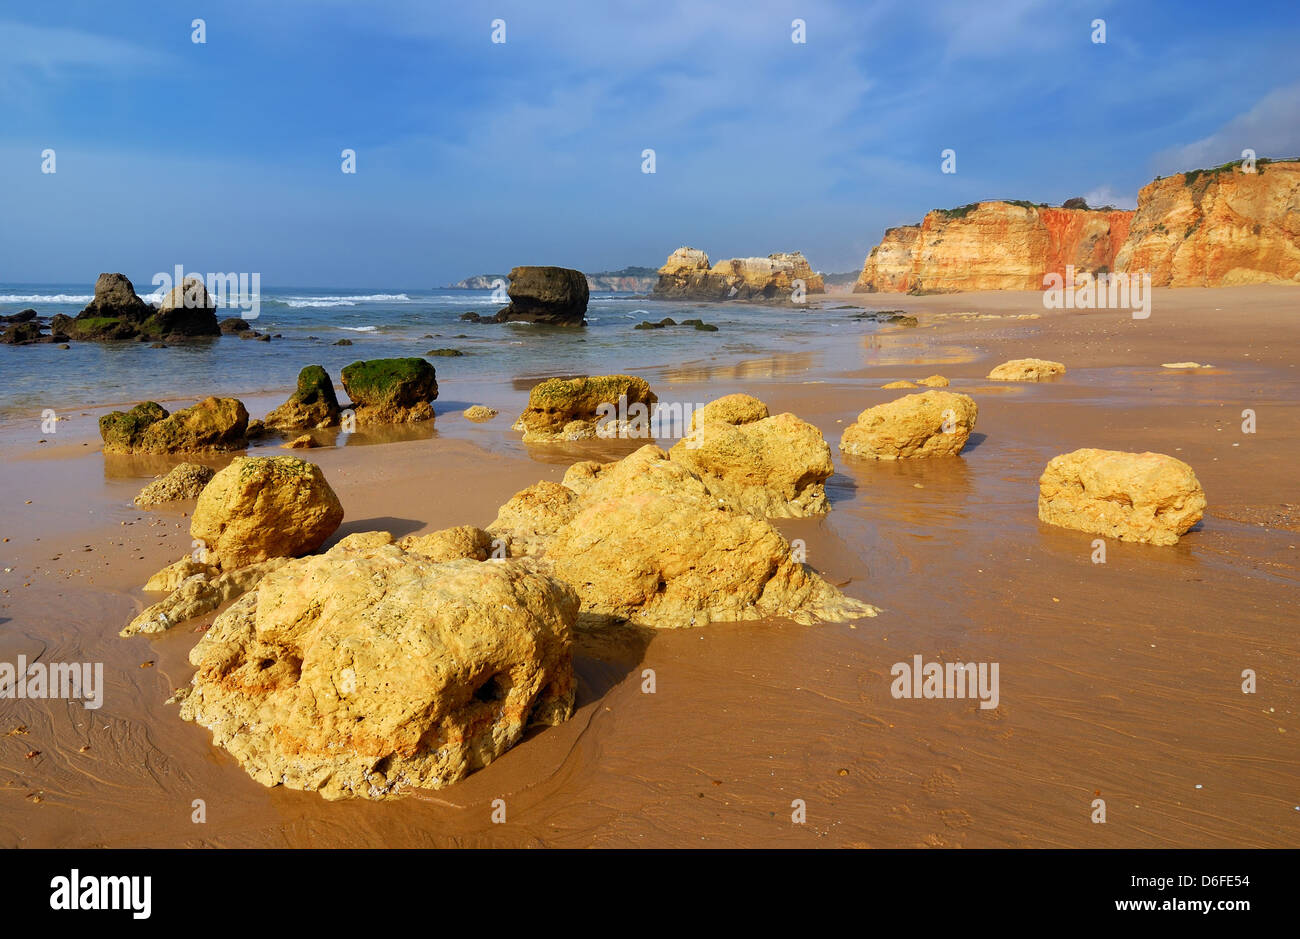 Praia da Rocha est la plage et zone bâtie sur l'océan Atlantique en Algarve, sud du Portugal. Banque D'Images